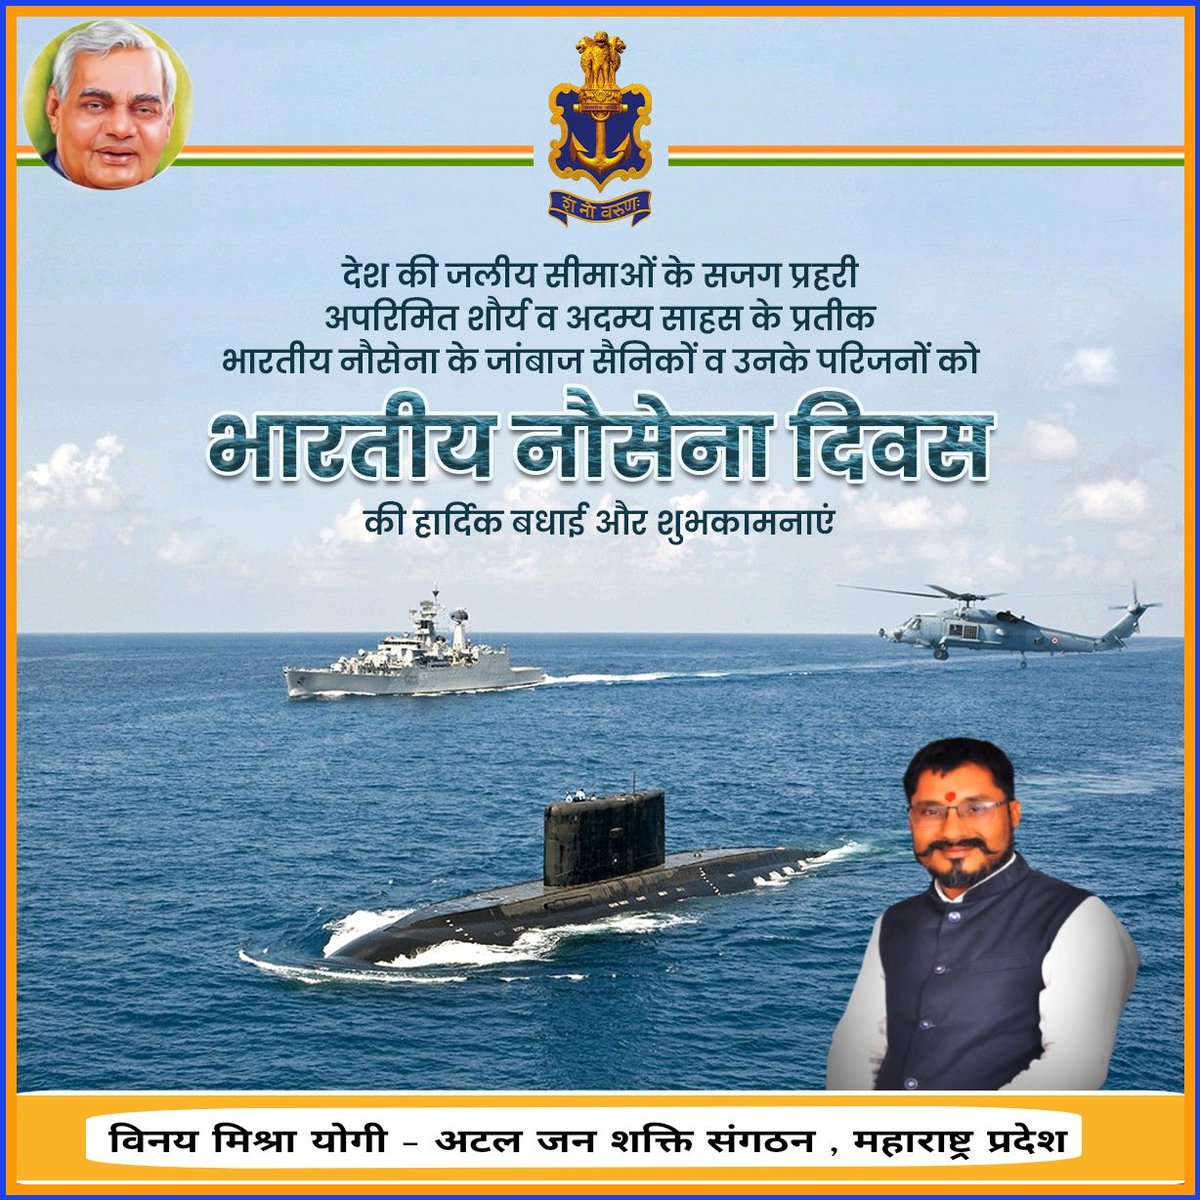 अदम्य साहस एवं निष्ठा से देश की सामुद्रिक सीमाओं की रक्षा करने वाले पराक्रमी वीर नौसैनिकों को सादर नमन।

देश के समस्त नौ सैन्य अधिकारियों एवं सैनिकों को 'भारतीय नौसेना दिवस' की हार्दिक बधाई एवं शुभकामनाएं।

#IndianNavyDay2023
#भारतीय_नौसेना_दिवस